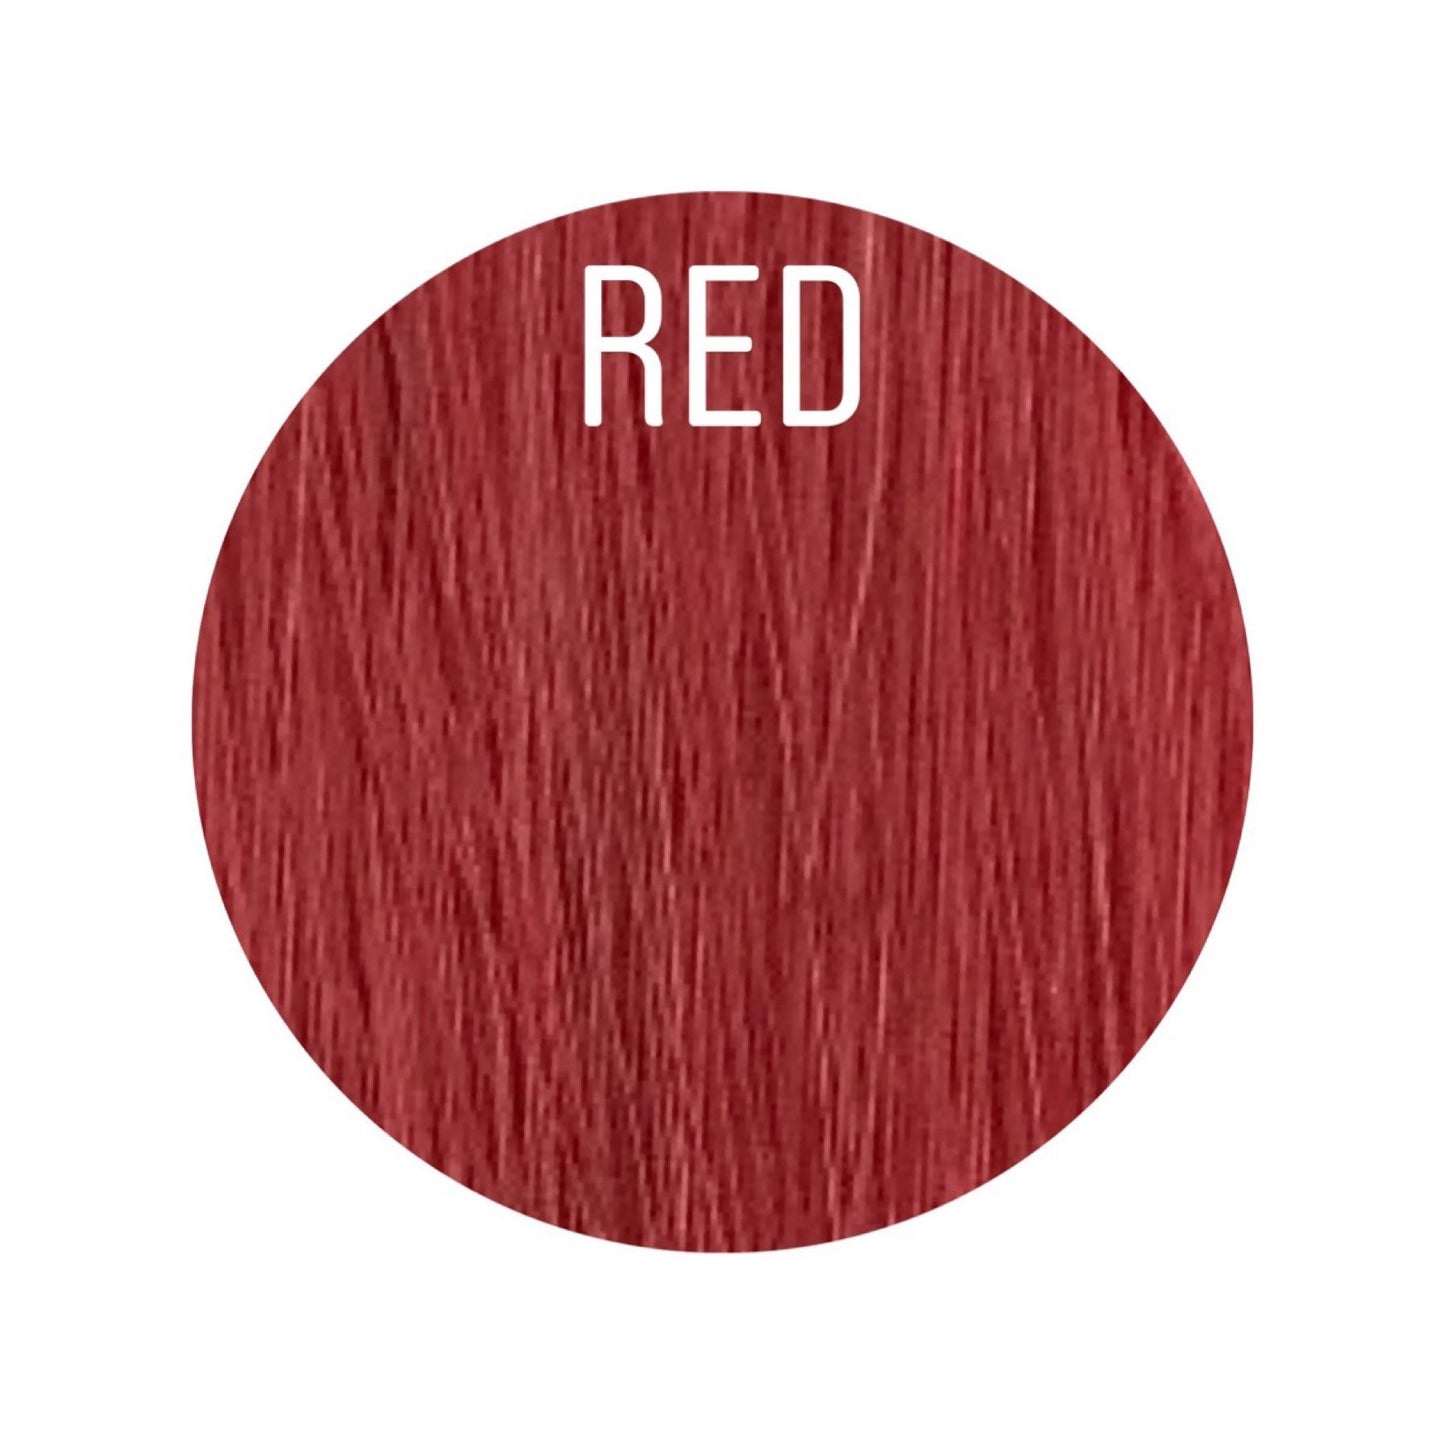 Micro links Color Red GVA hair_Retail price - GVA hair